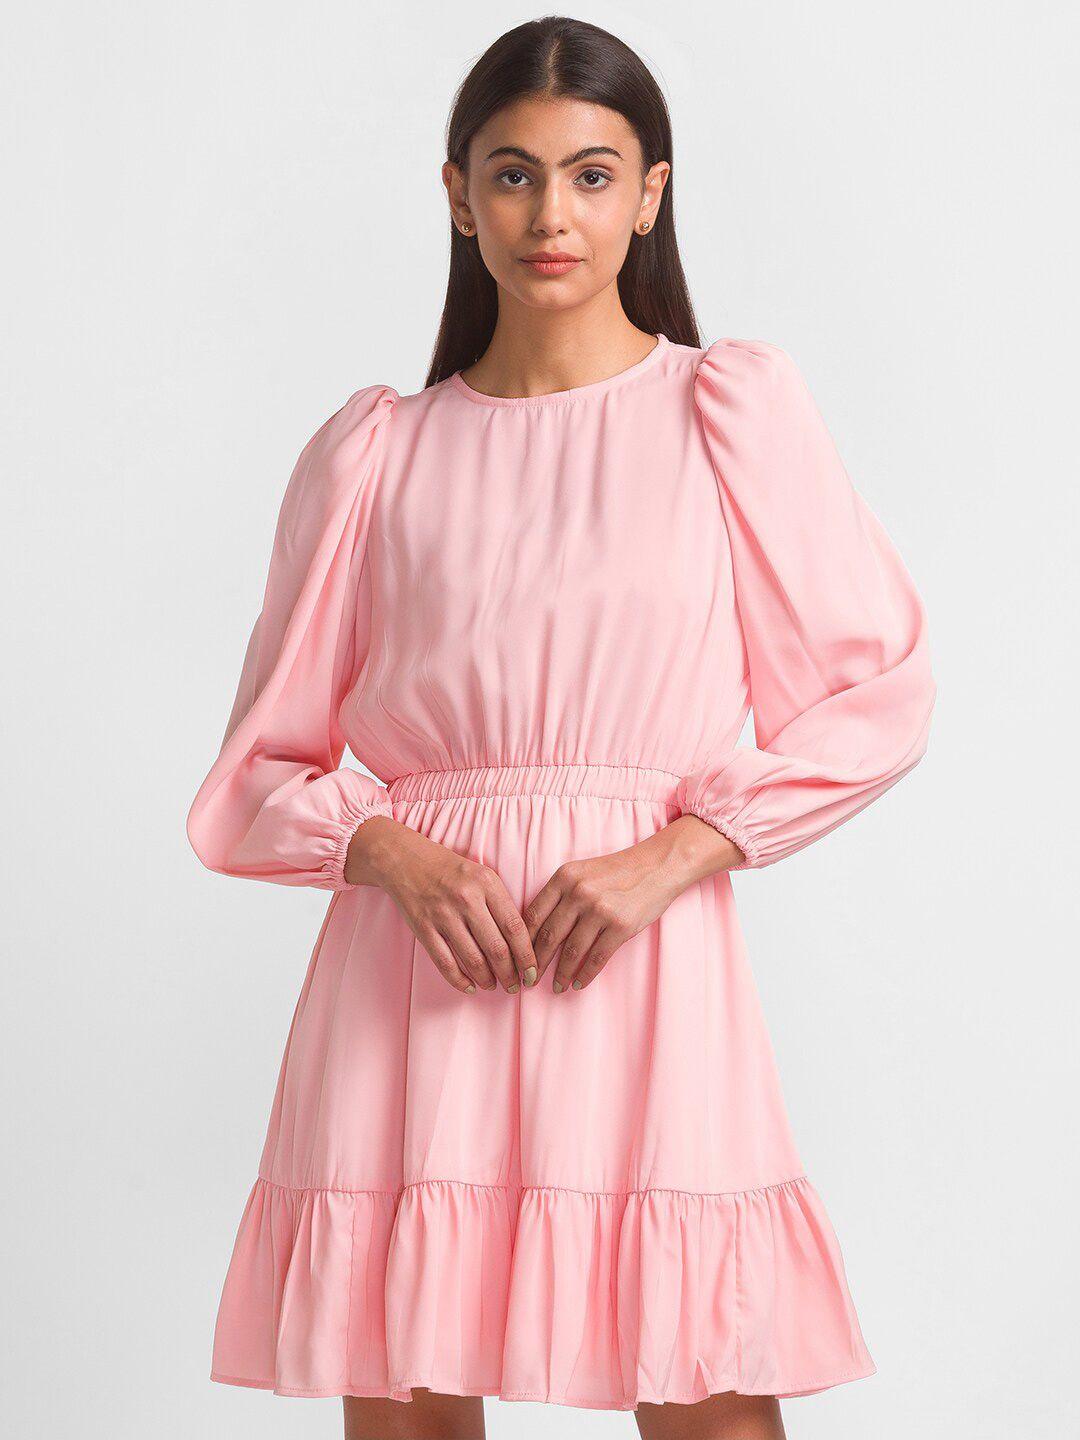 globus-pink-crepe-dress